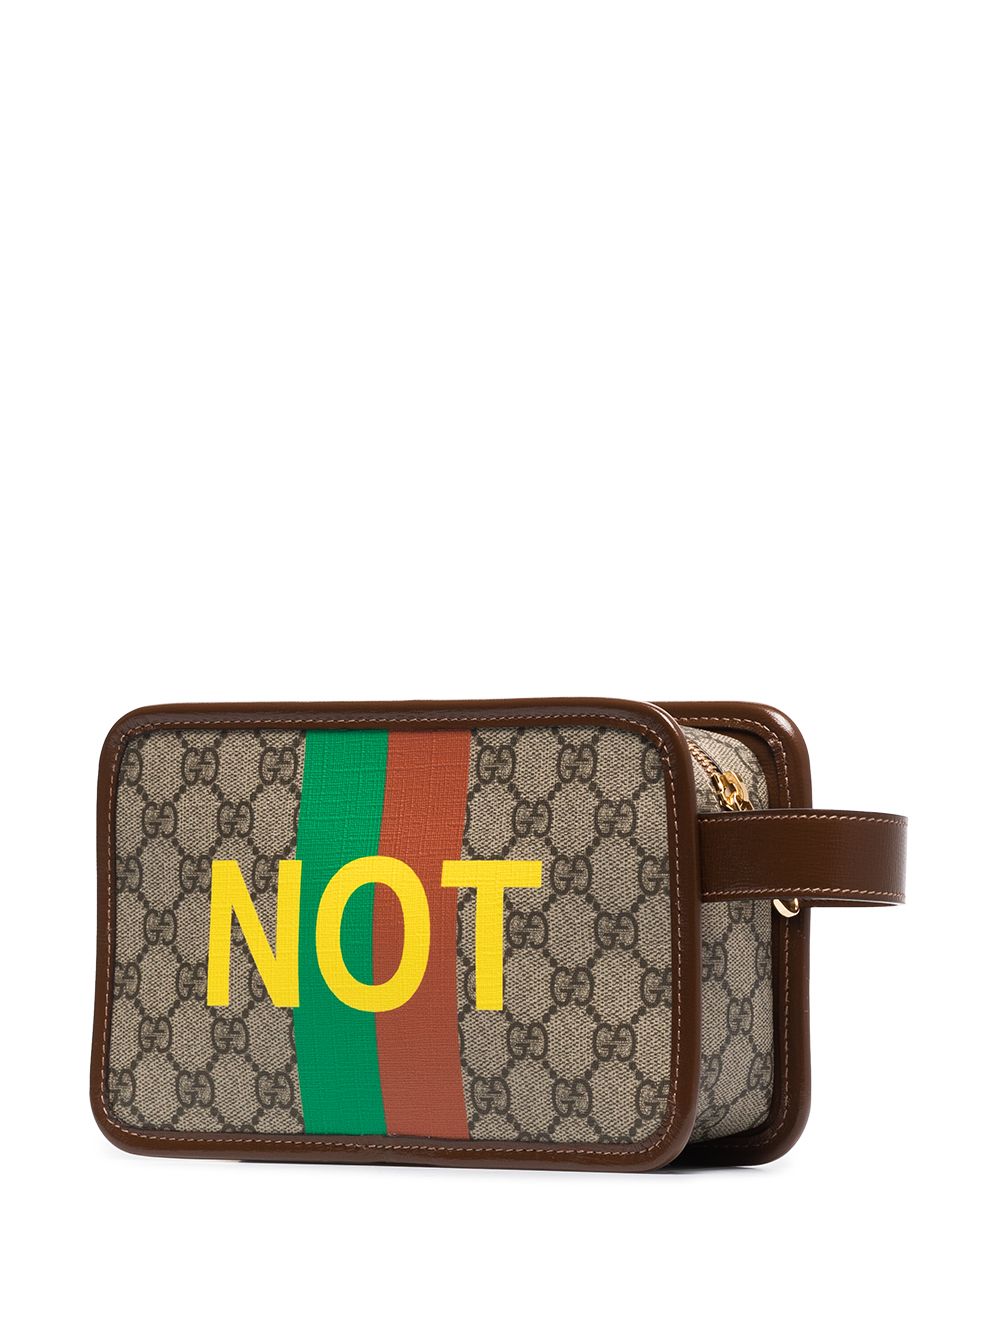 фото Gucci несессер с монограммой и принтом fake/not